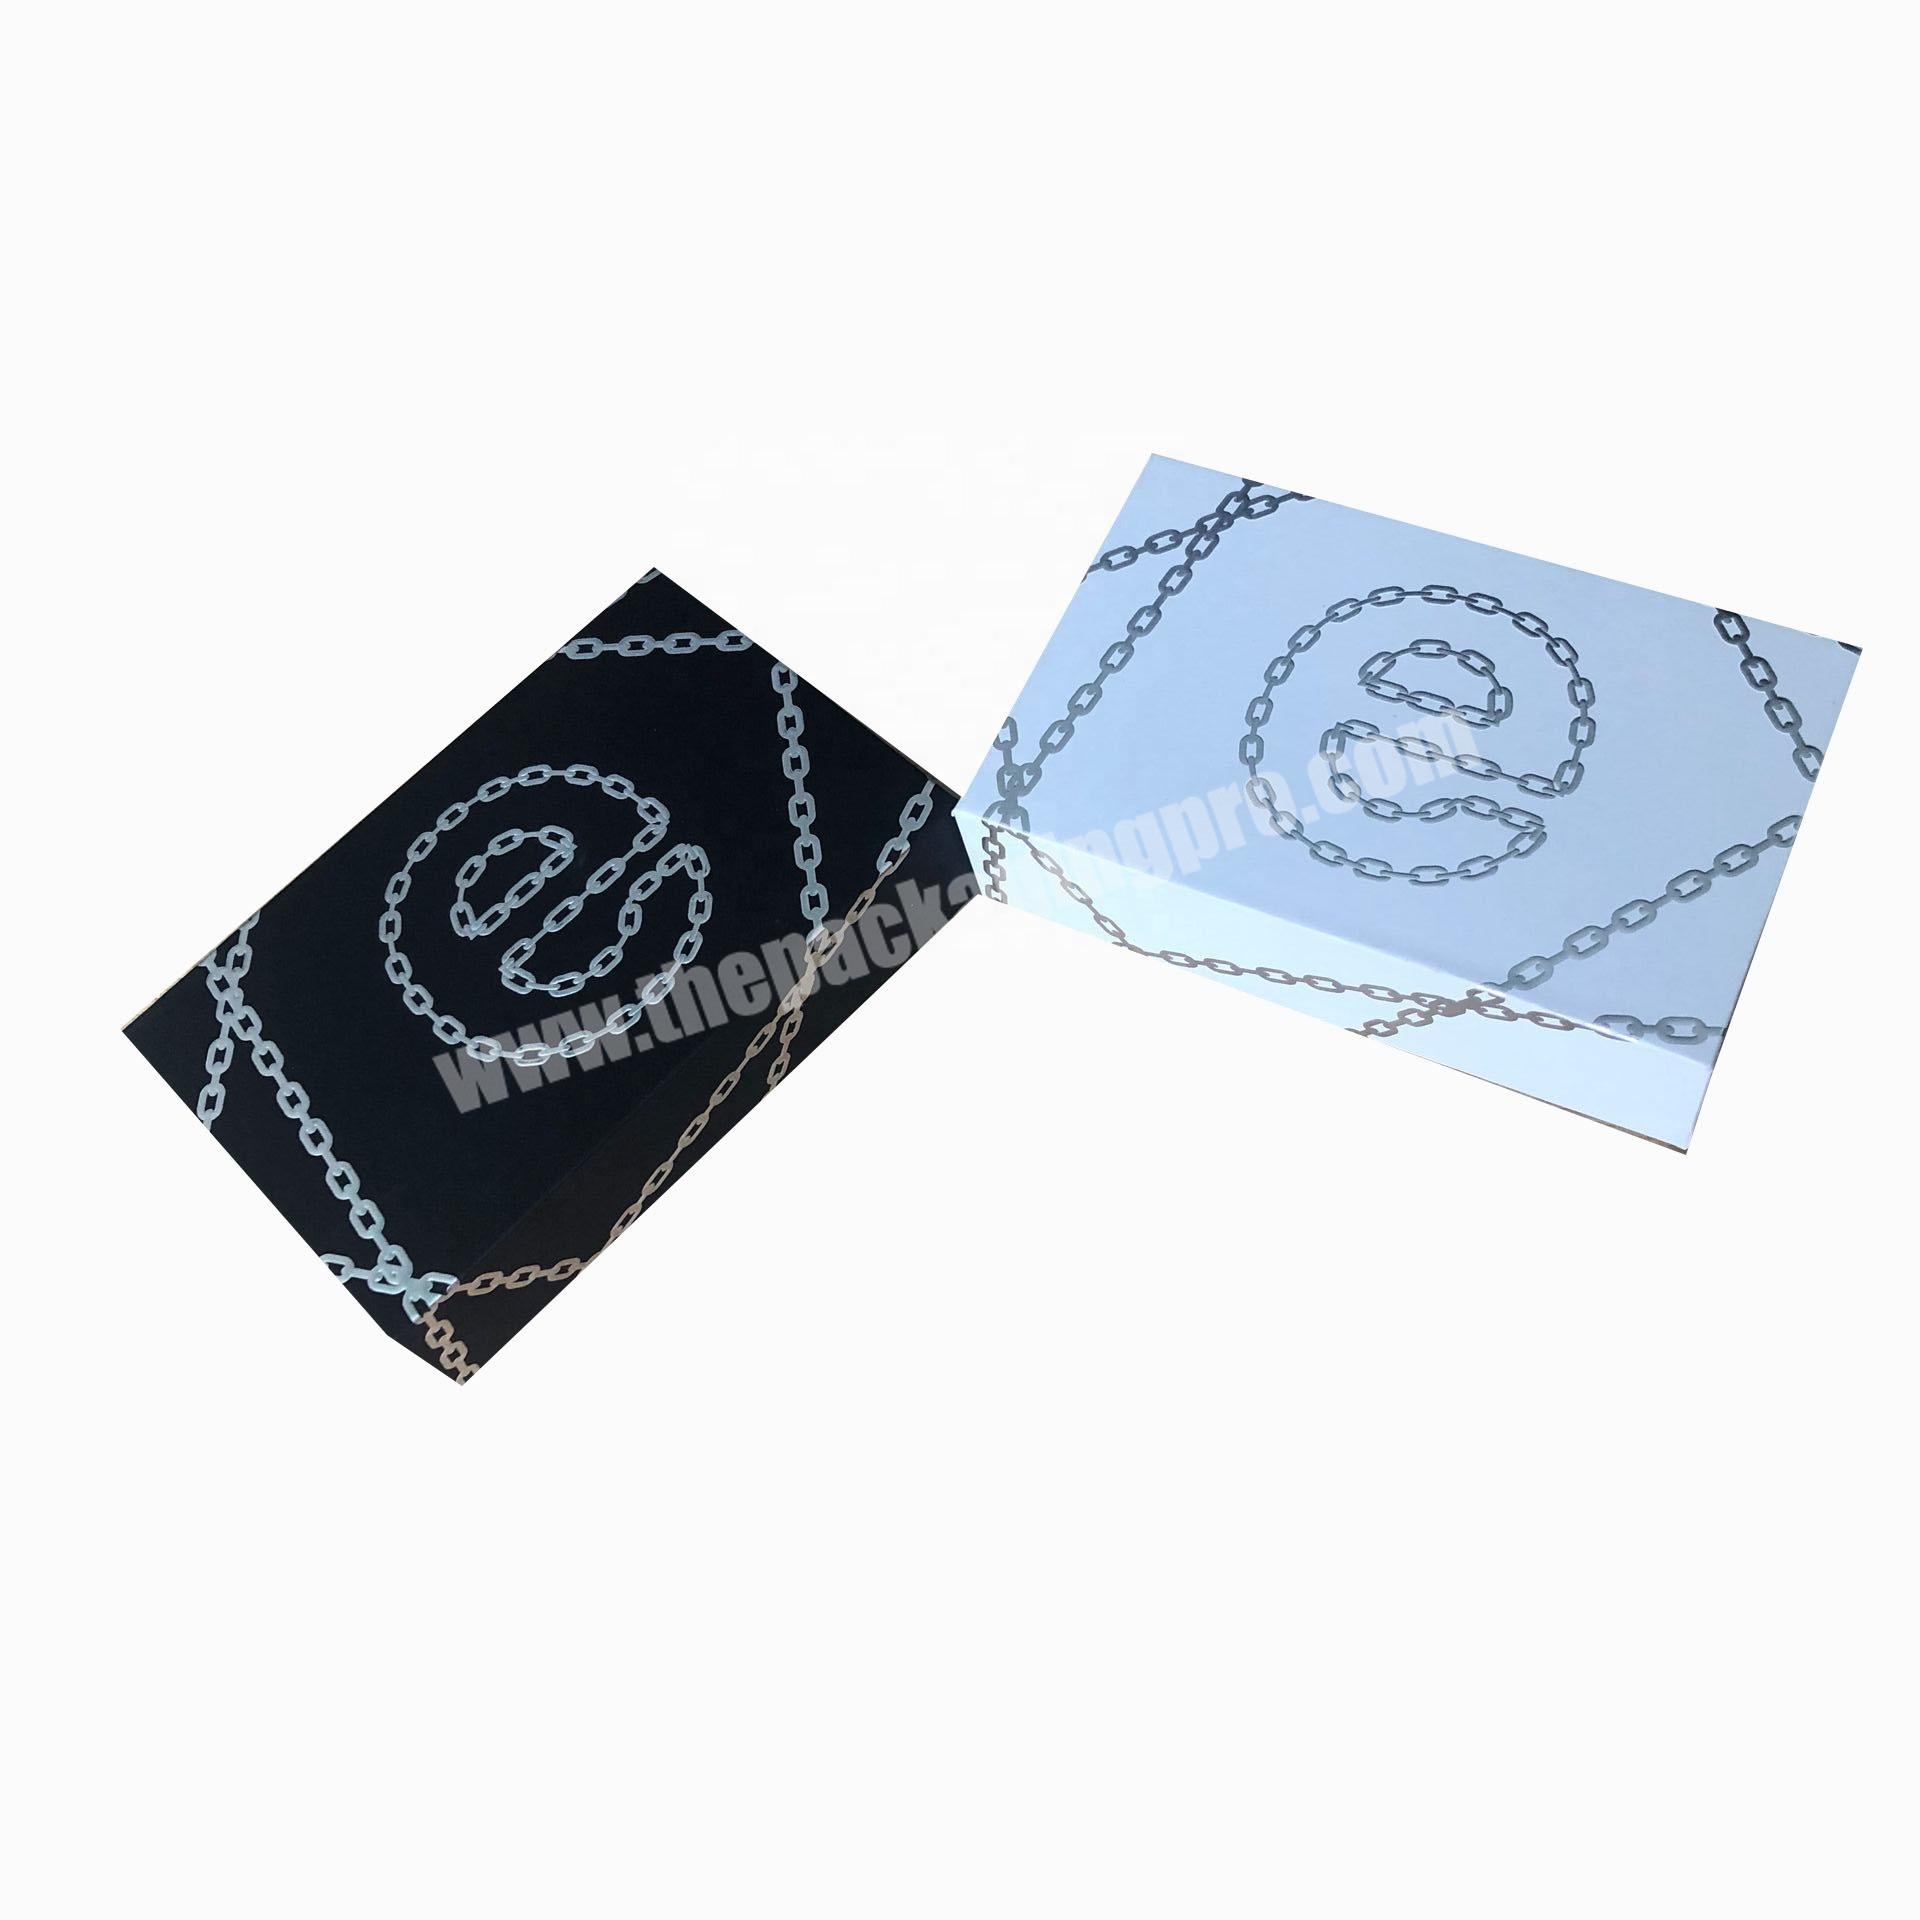 The latest LED custom logo black engagement ring necklace gift box